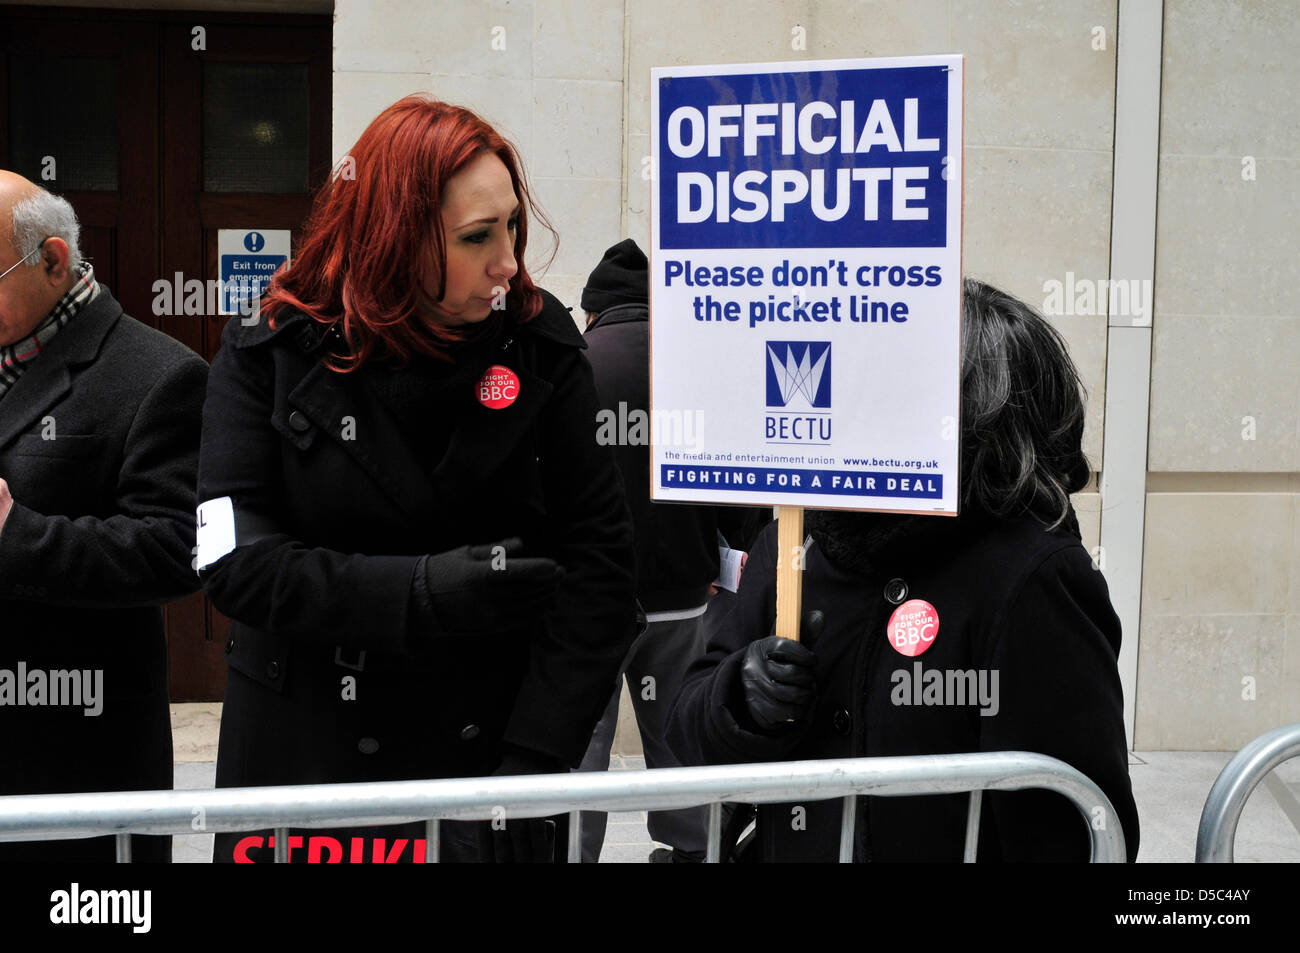 Una donna che tiene un cartello la lettura ' controversia ufficiale, si prega di non attraversare la linea di picchetto', presso la BBC, London, Regno Unito Foto Stock